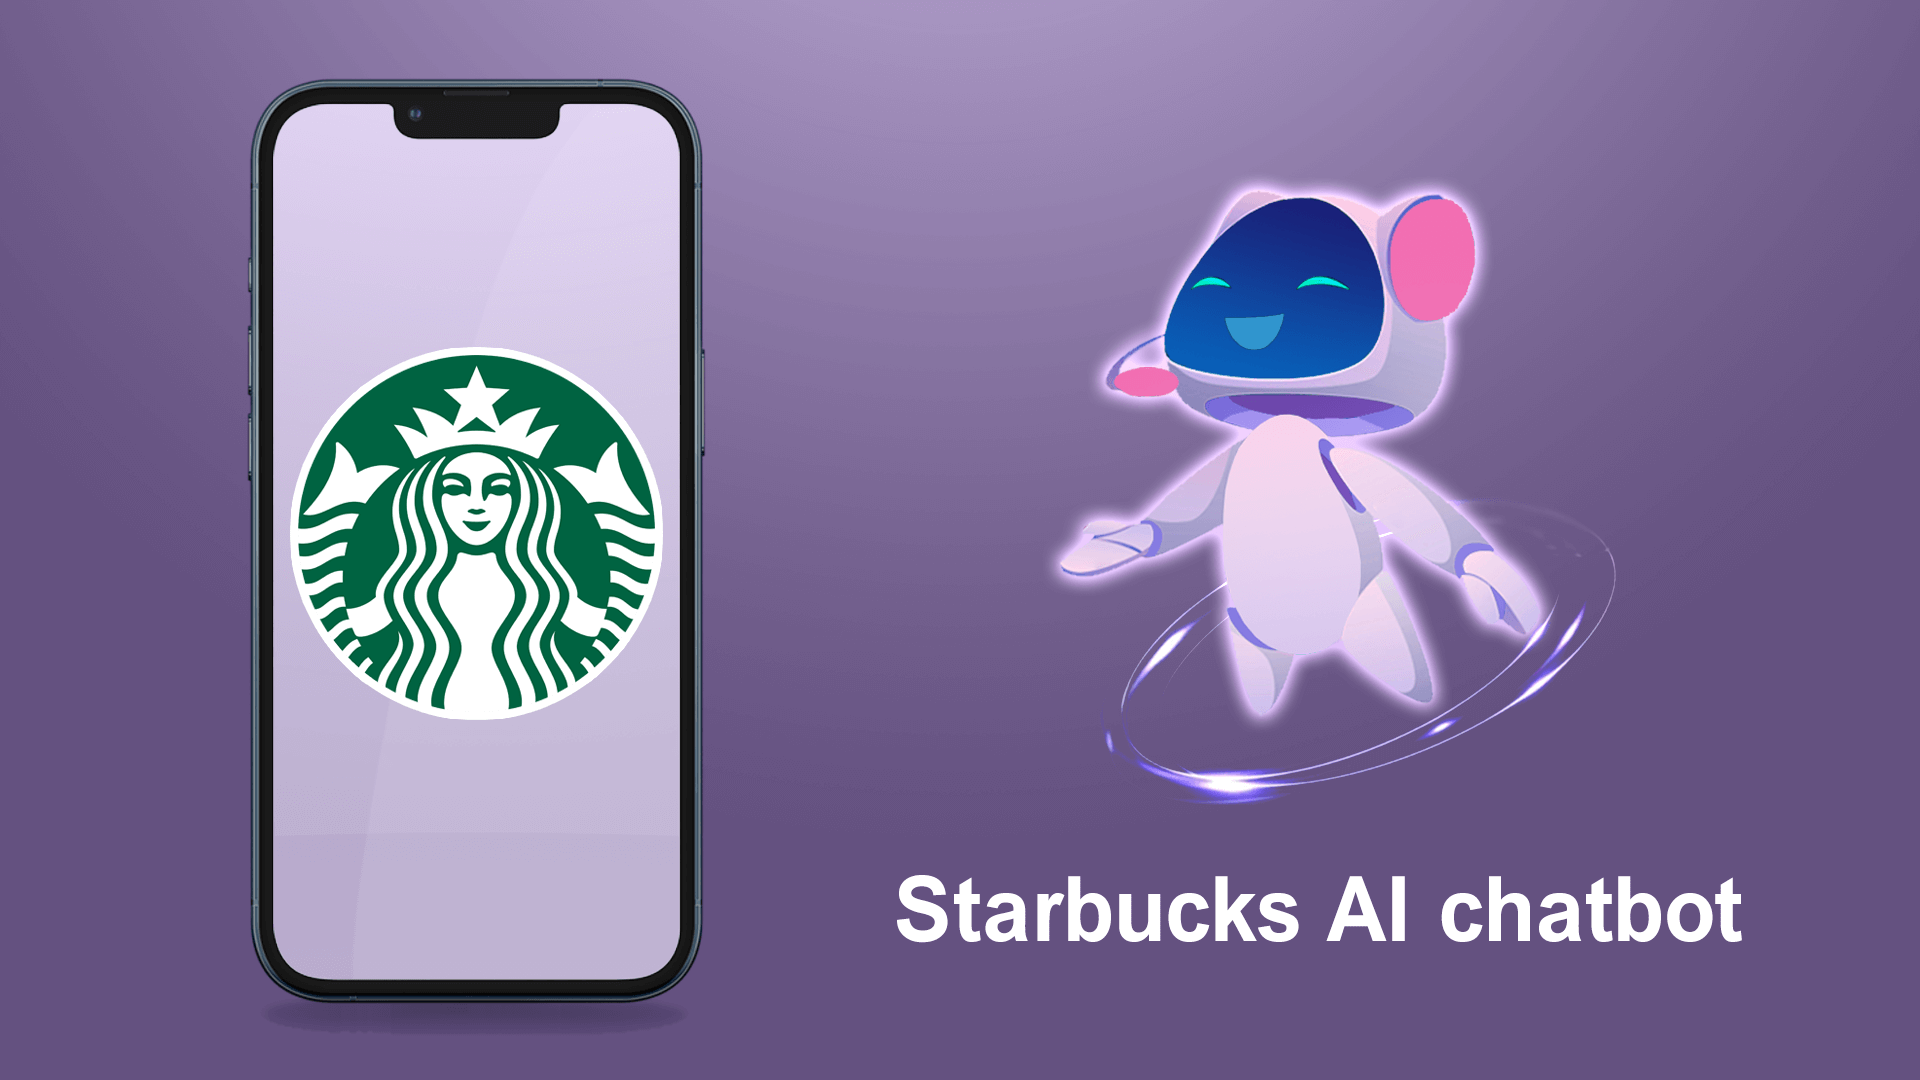 Starbucks AI chatbot